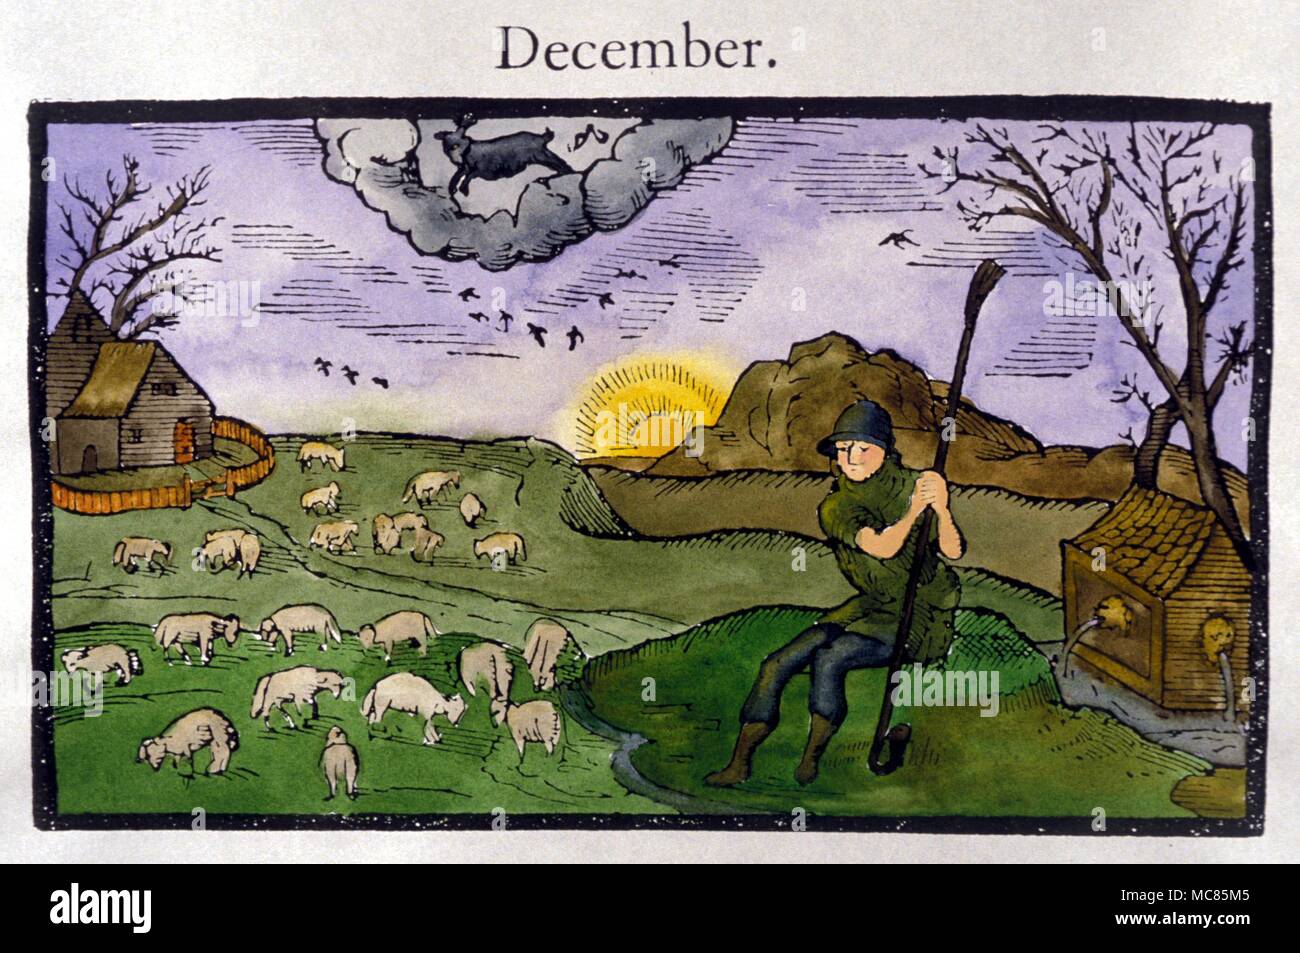 Signes du Zodiaque - Capricorne. Le bouc du Capricorne, du mois de décembre. À partir de la série de 'mois' utilisé comme dans les vignettes de l'Edmund Spenser Fairie Queene 'la', dérivé de son 'Calendrier' du hepheard de 1579. Banque D'Images